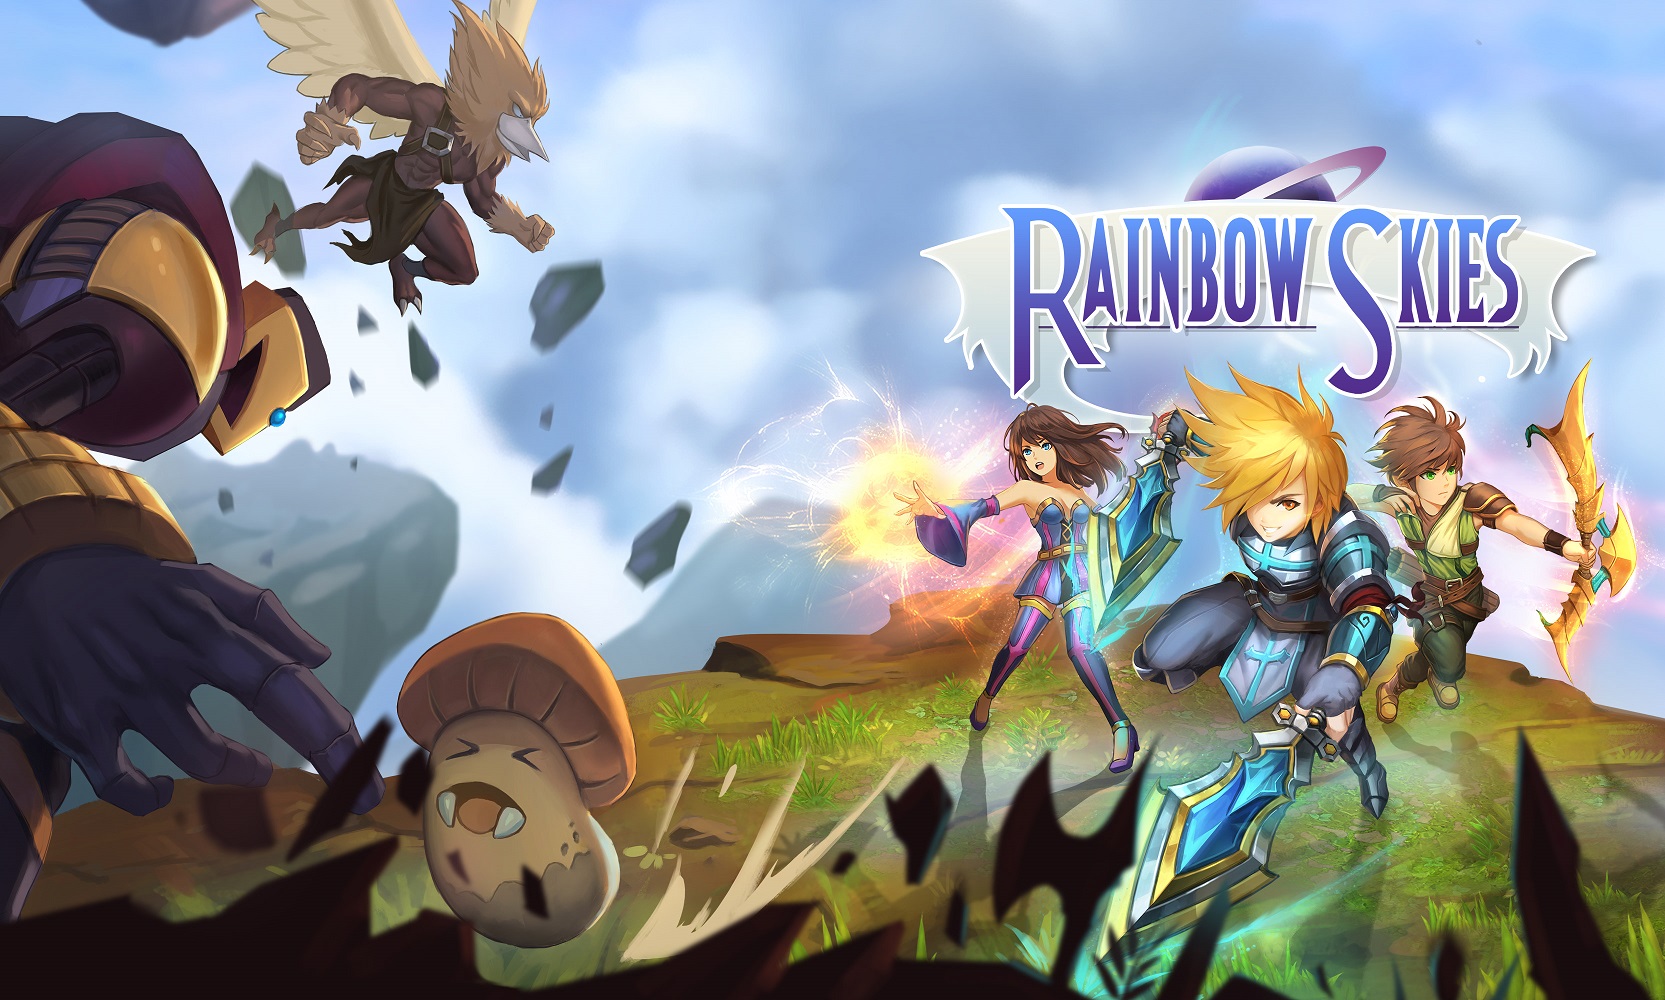 Rainbow Skies, juego de rol por turnos fantástico, llega el 27 de junio a PS4, PS3 y PS Vita